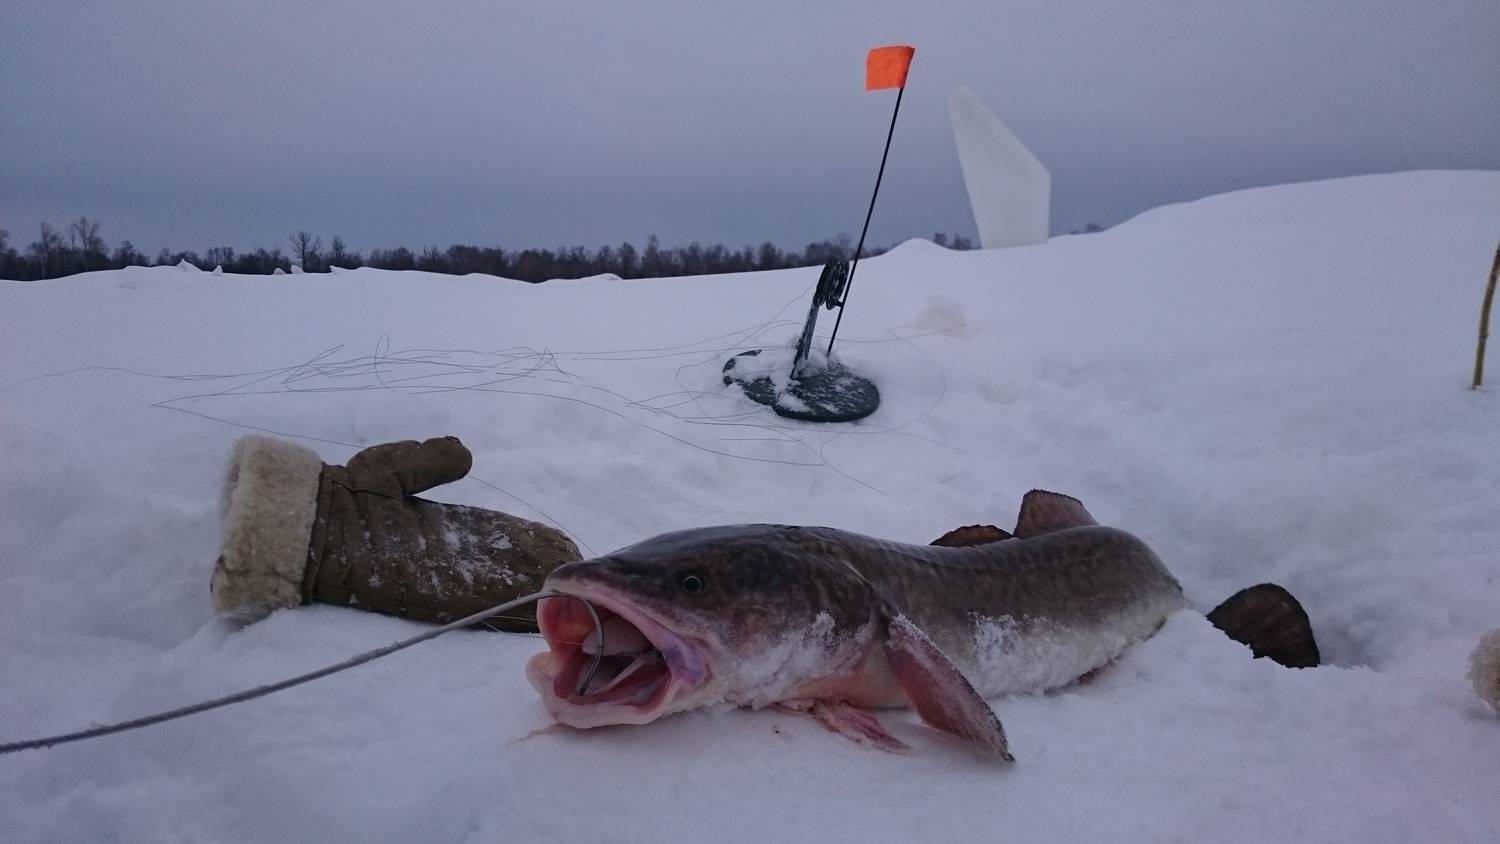 Ловля налима зимой на жерлицы: особенности рыбалки в феврале, используемые оснастки